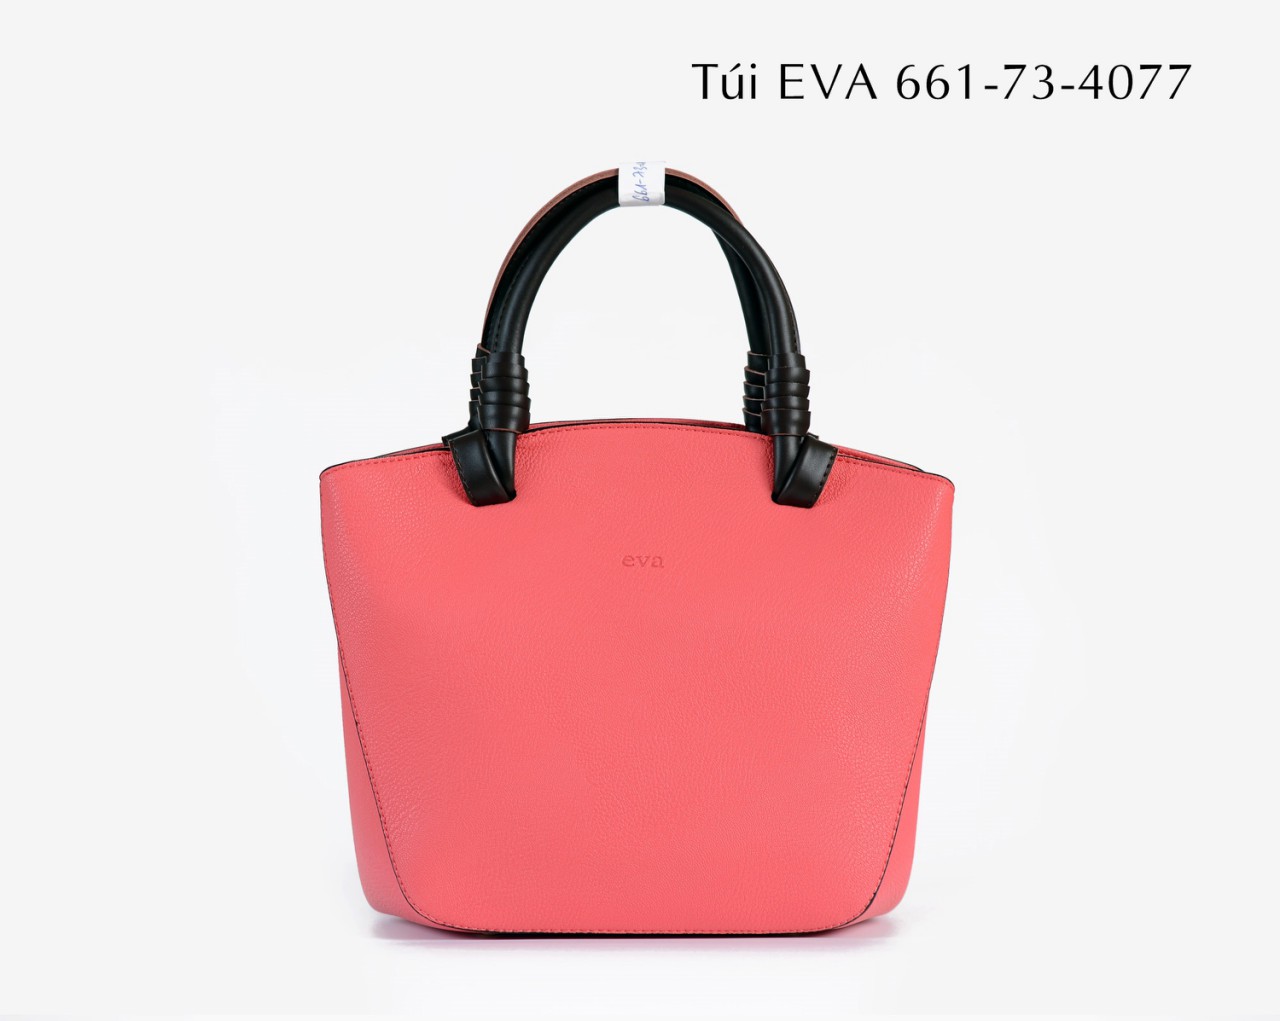 Túi xách nữ EVA661-73-4077 kiểu dáng trang nhã, tinh tế mới